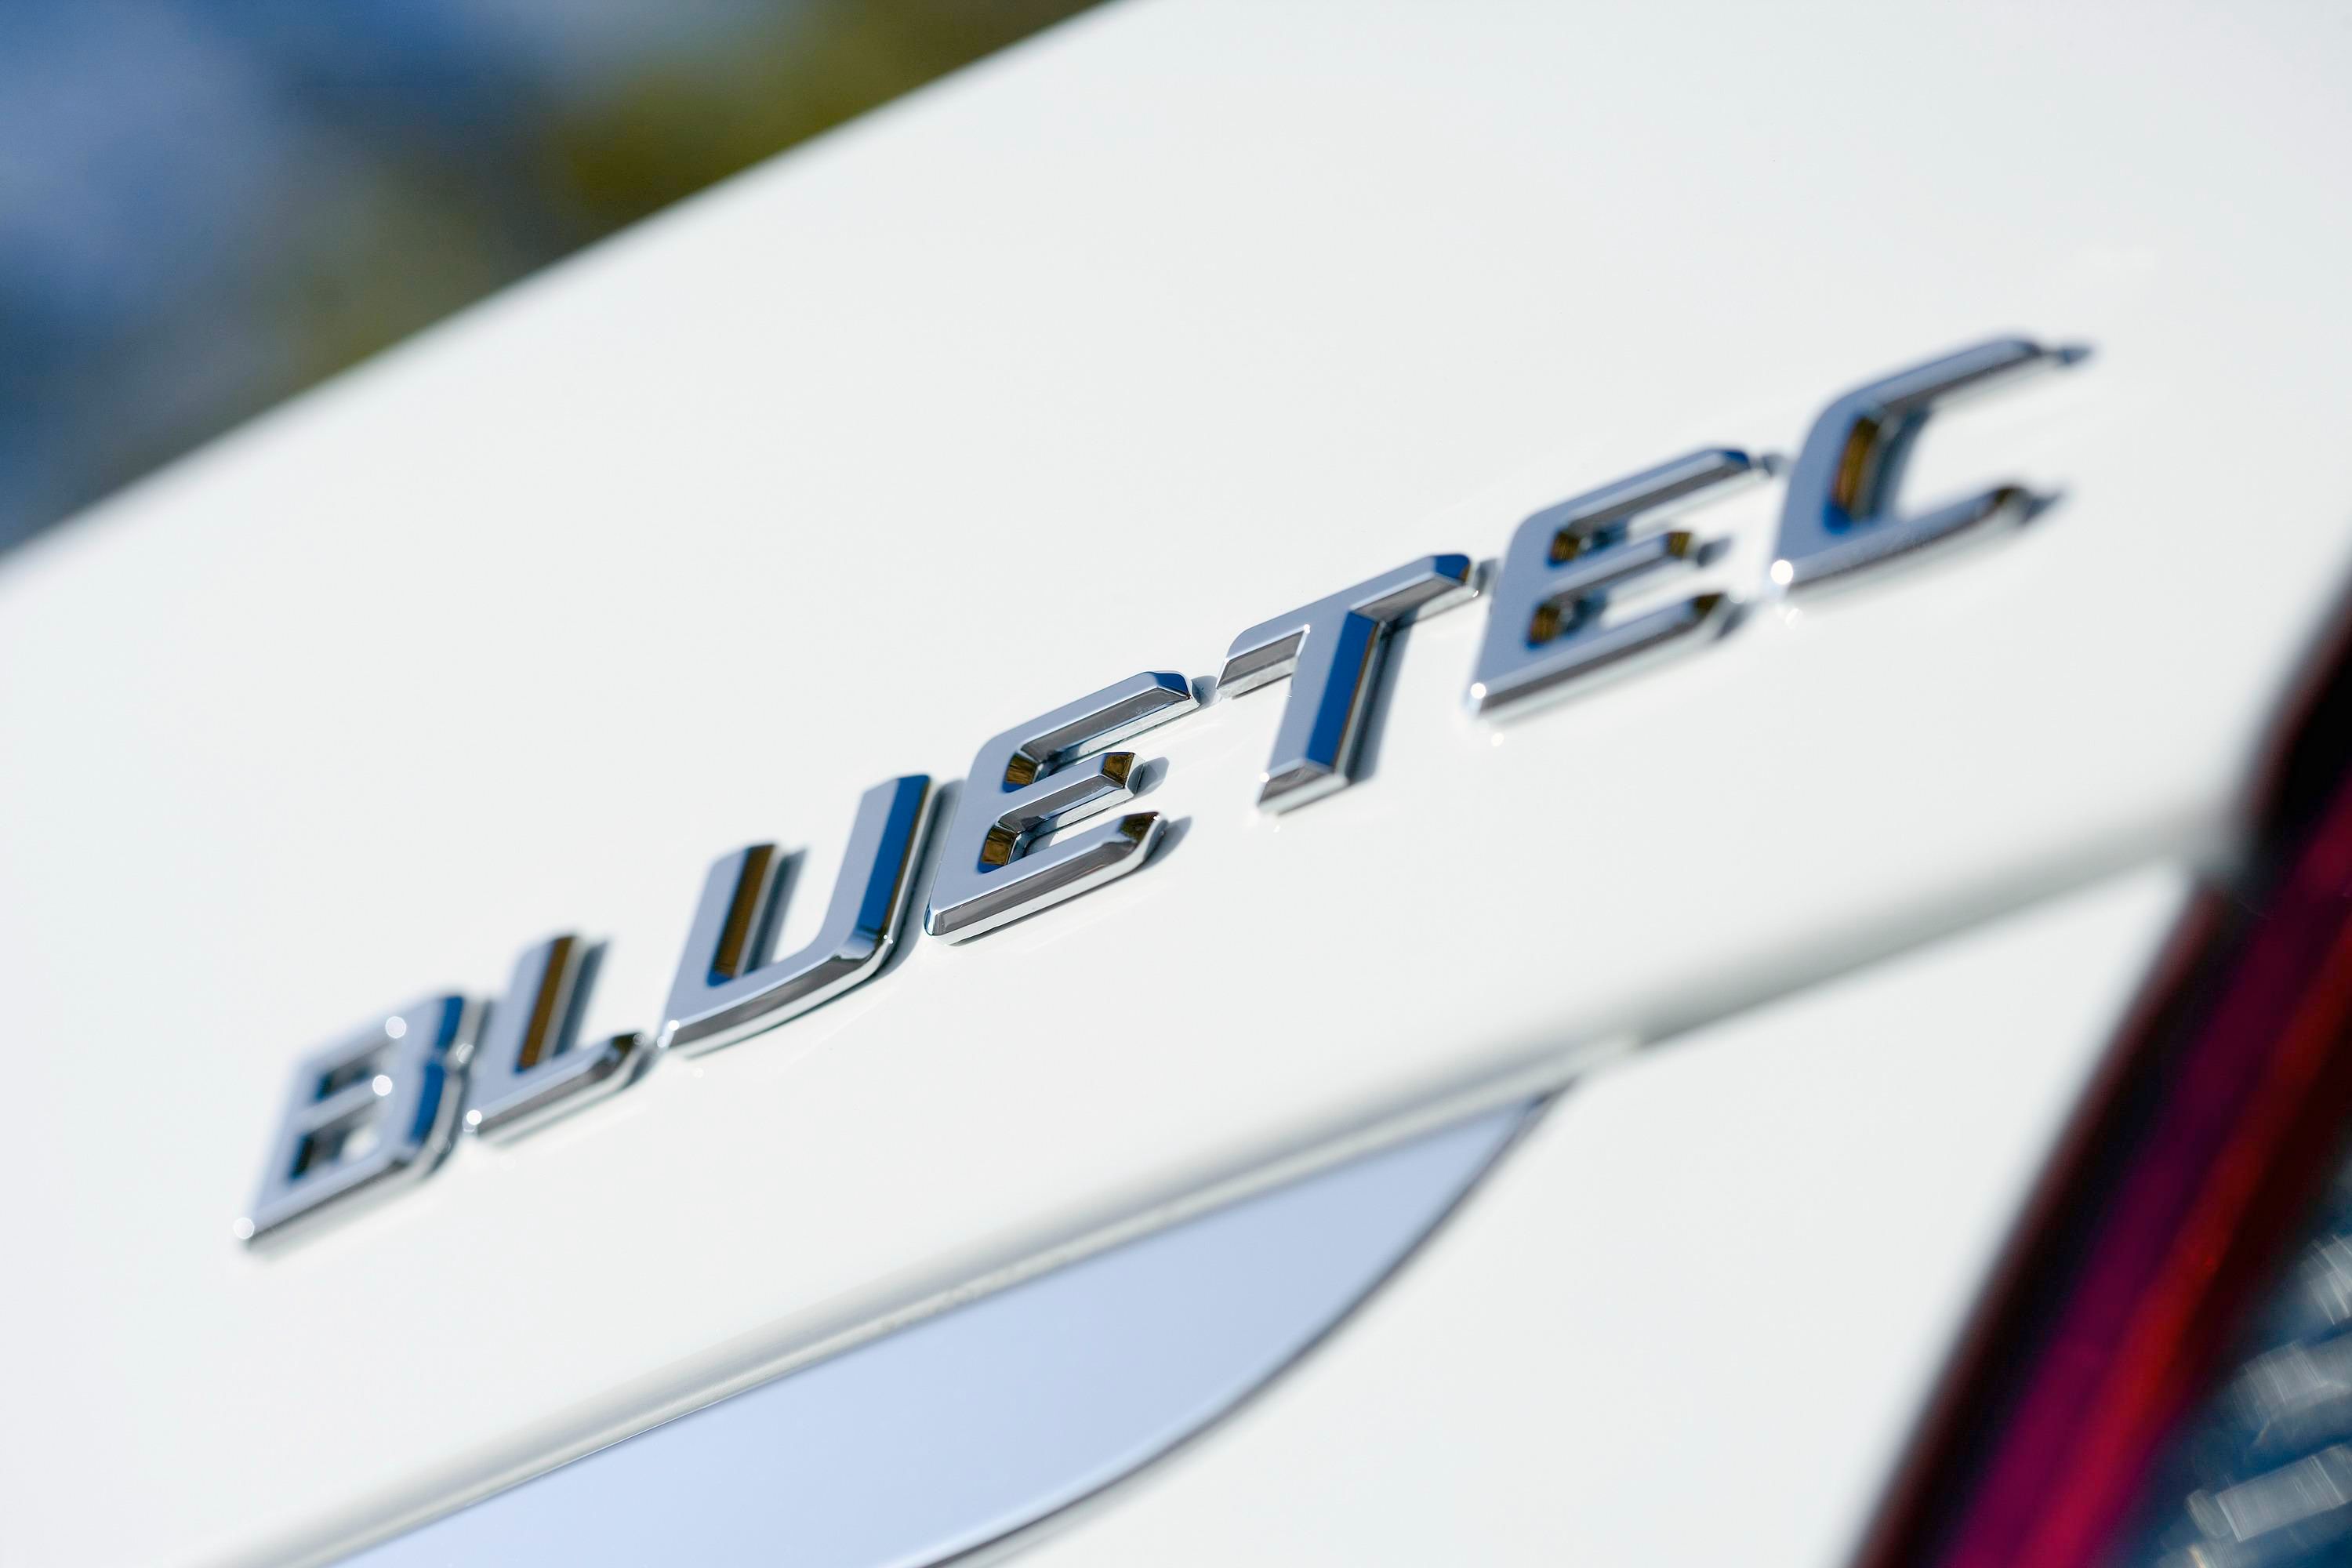 2008 Mercedes E300 Bluetec